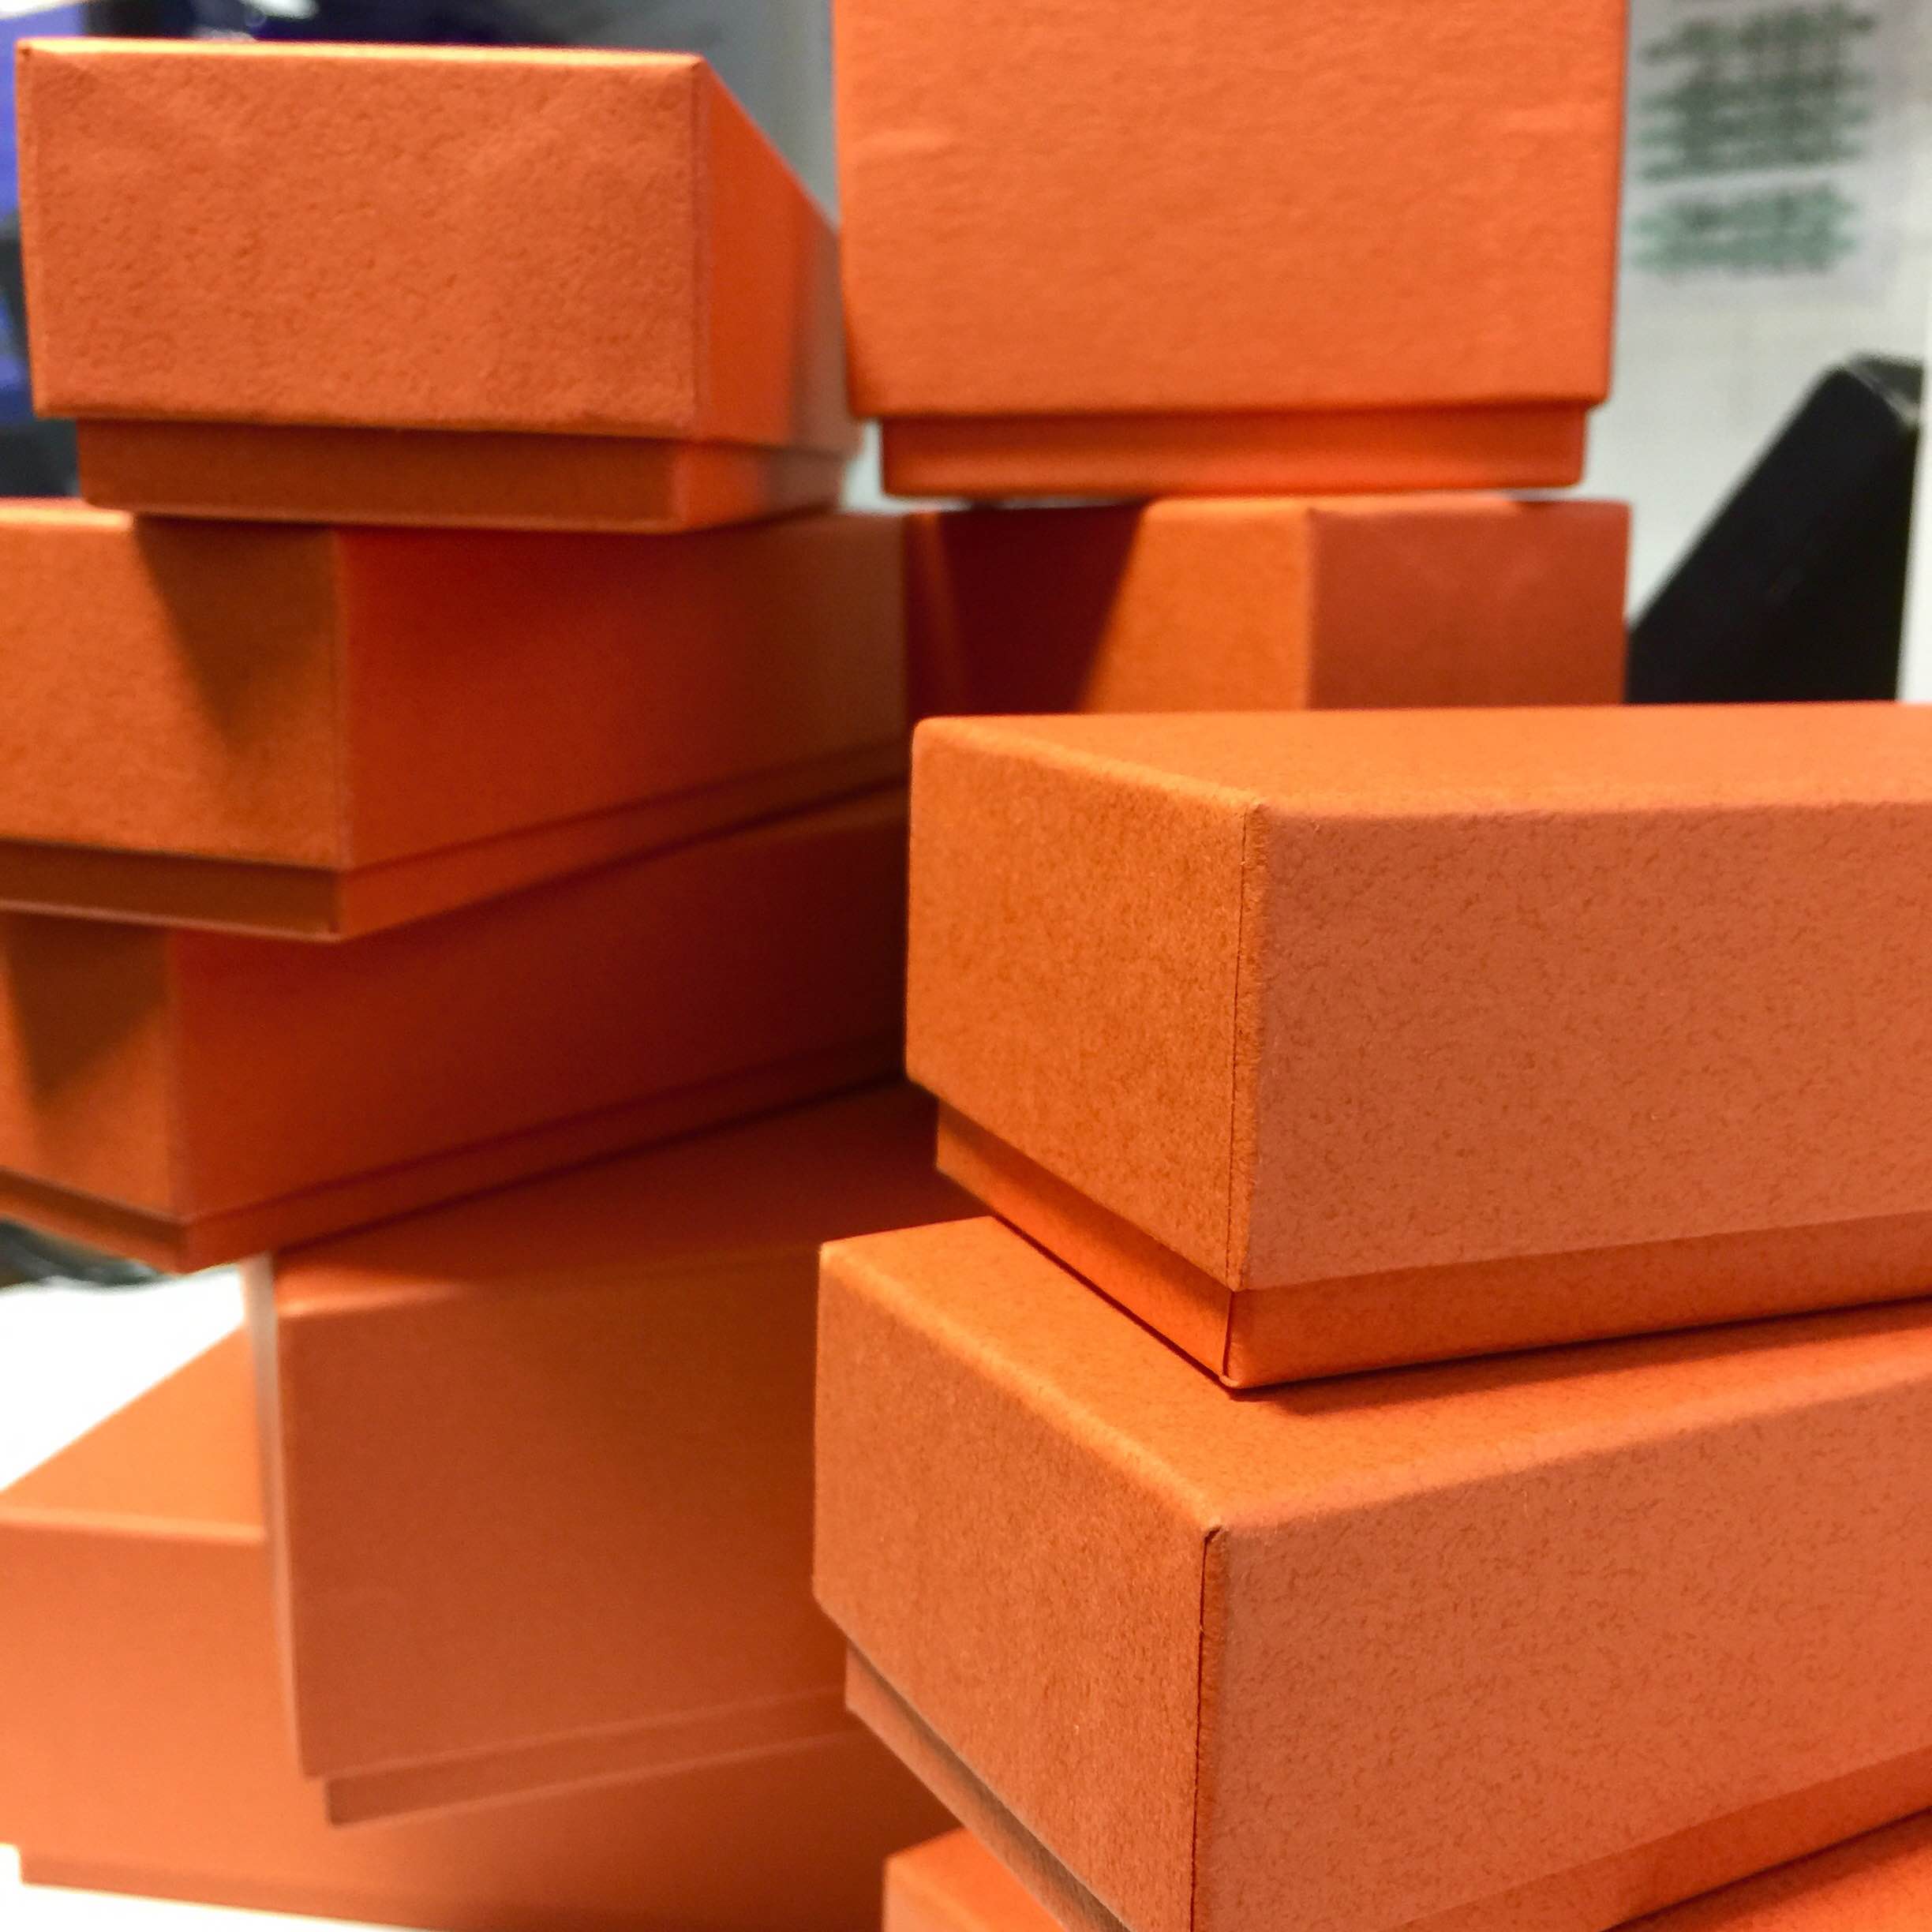 永田さんが大好きなオレンジカラーのBOX